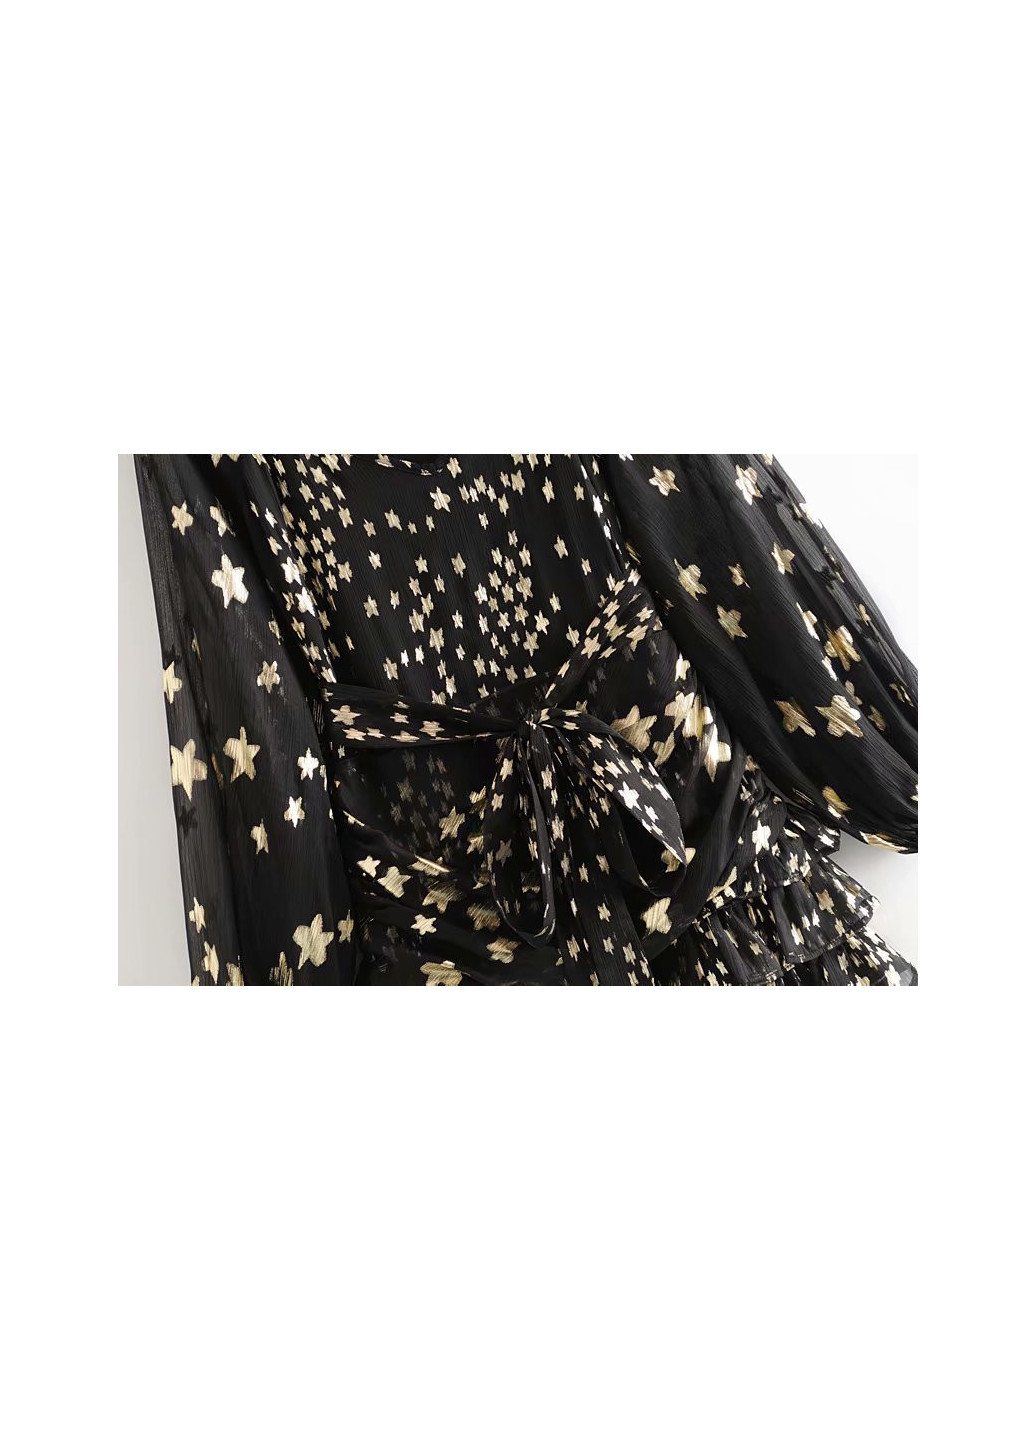 Черное вечернее платье женское сияние звезд Berni Fashion с рисунком